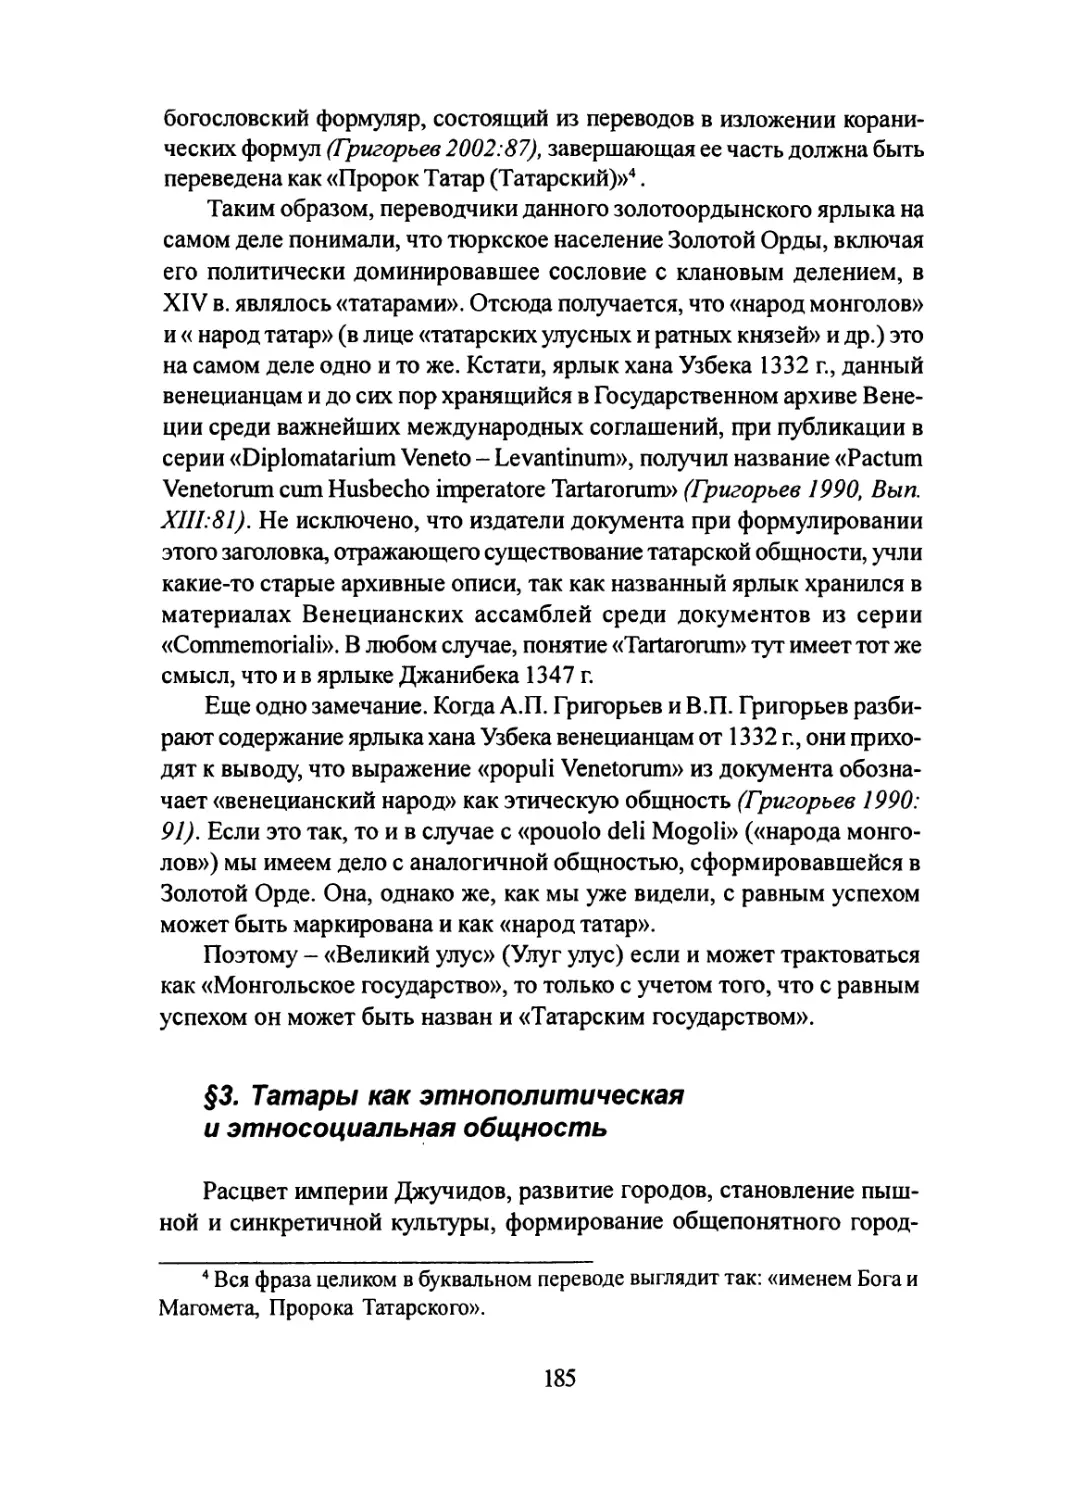 §3. Татары как этнополитическая и этносоциальная общность